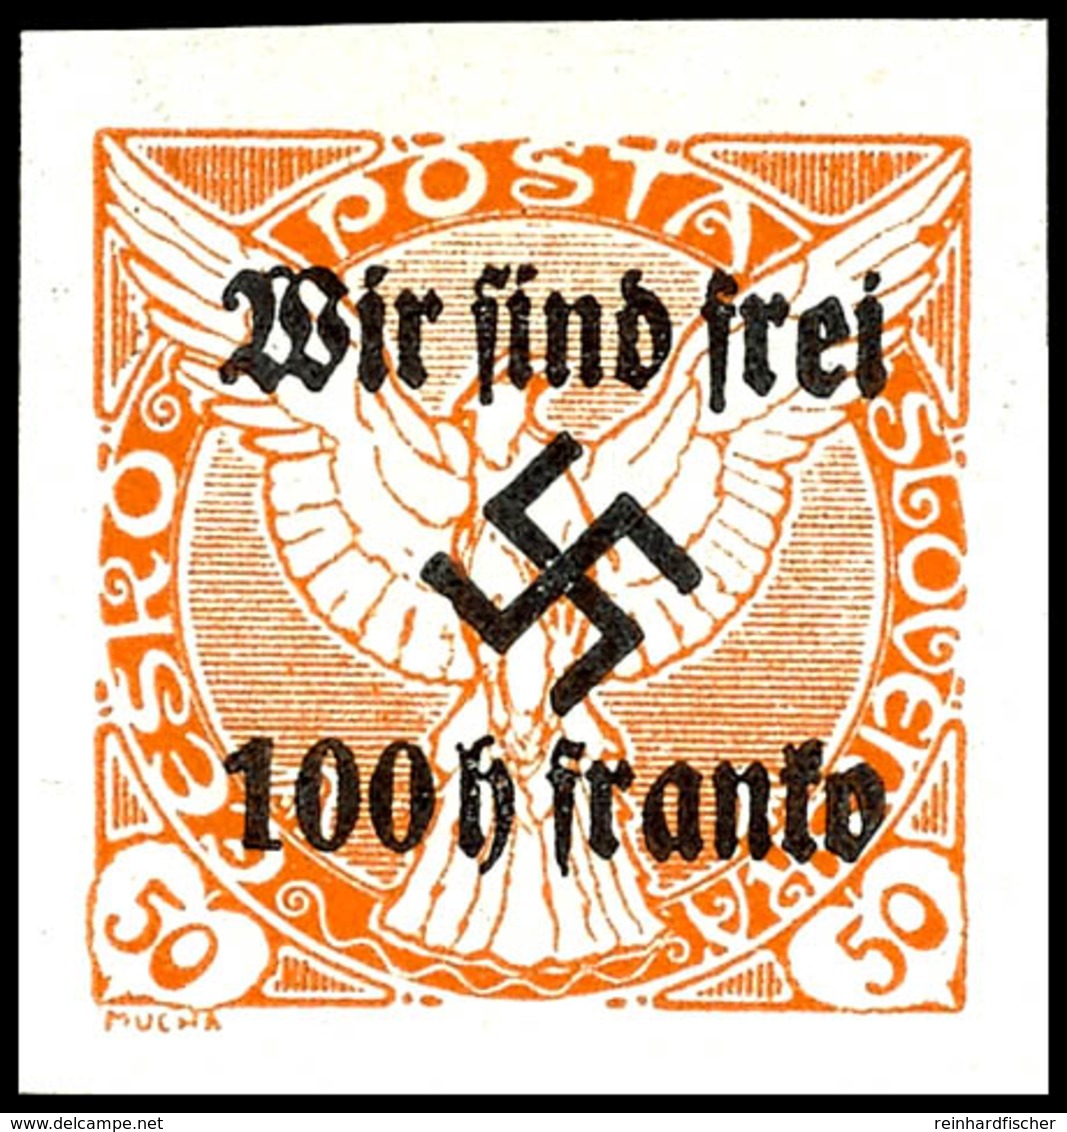 100 Heller Auf 50 Heller Zeitungsmarke Mit Aufdruck "Wir Sind Frei! + Hakenkreuz", Tadellos Ungebraucht, Geringe Auflage - Altri & Non Classificati